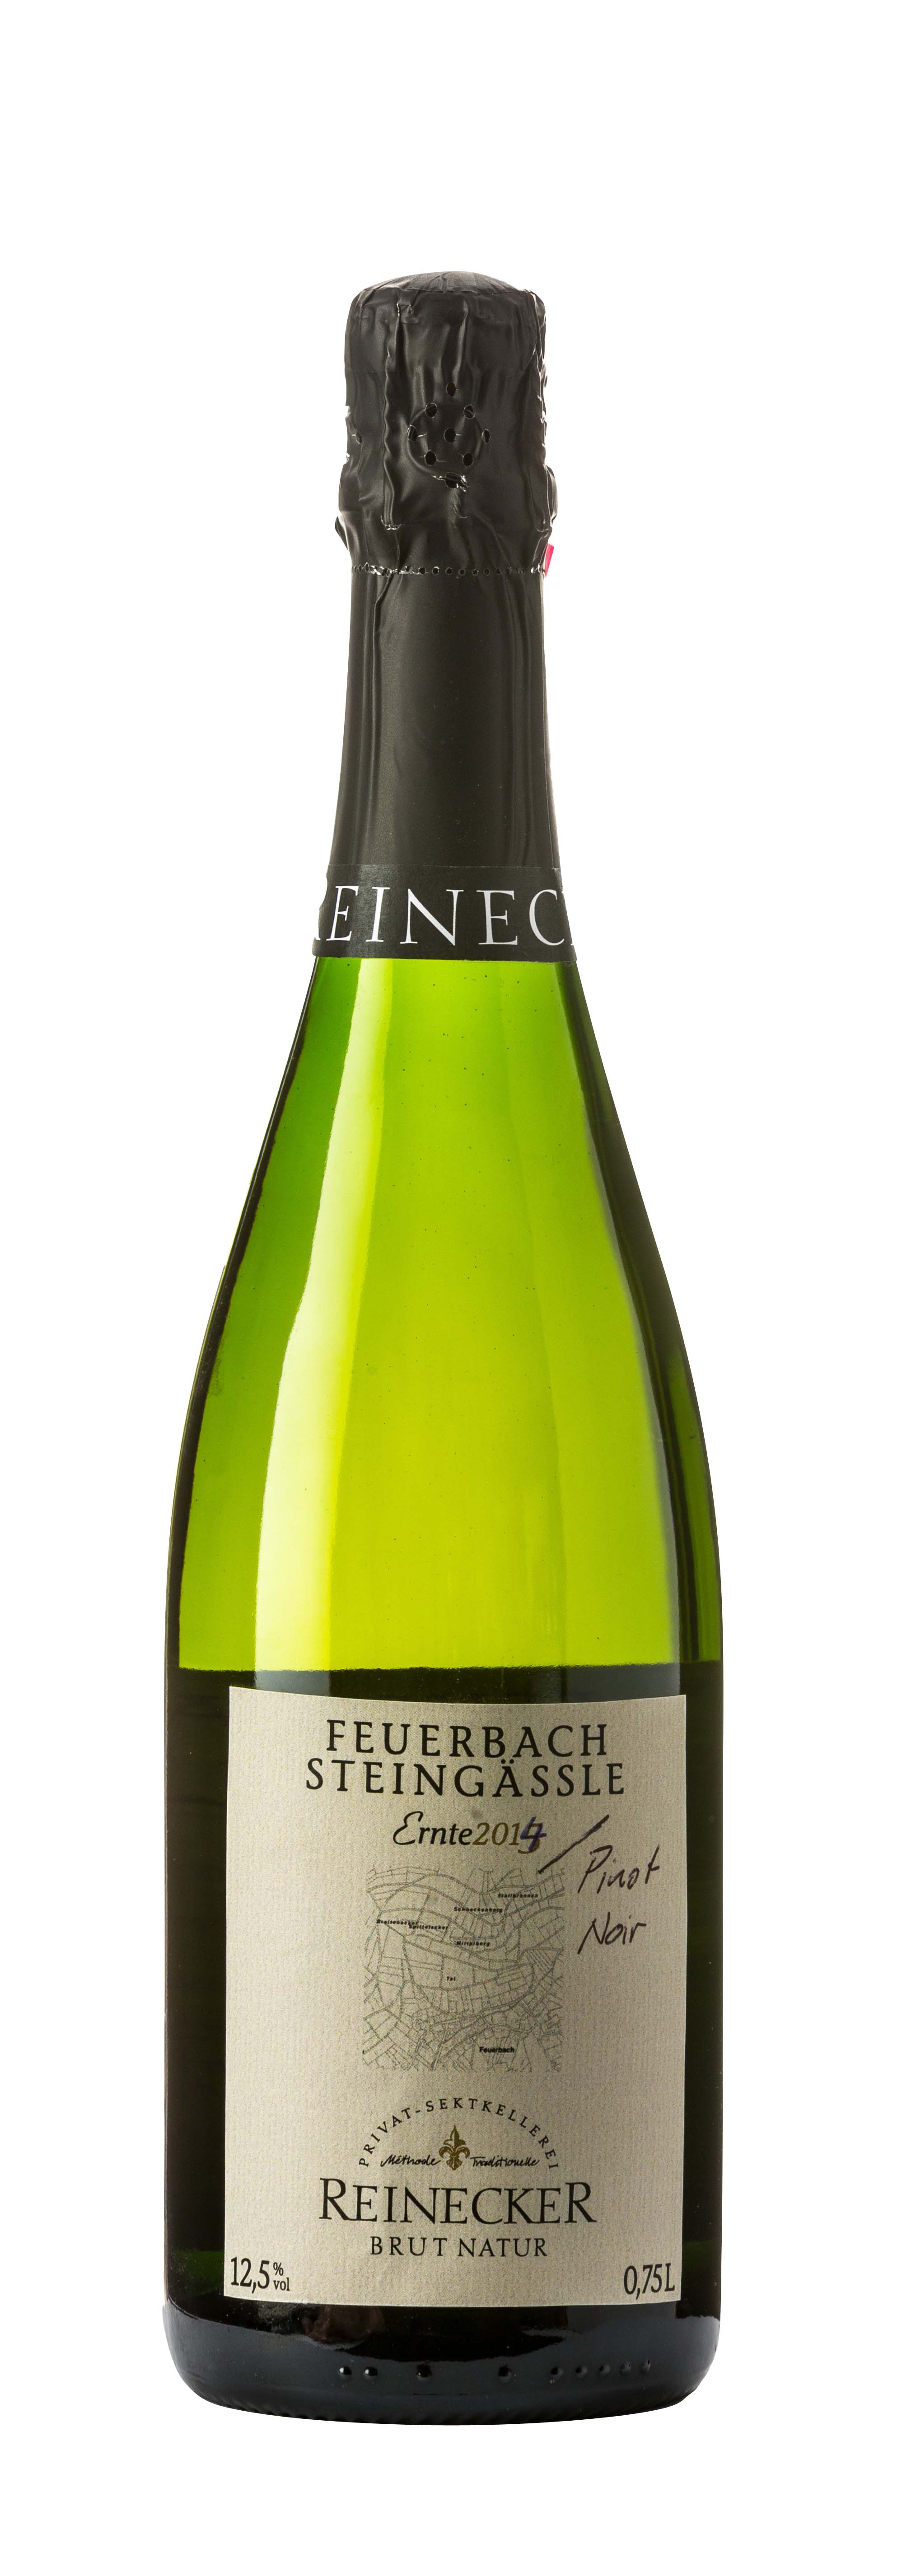 Feuerbacher Steingässle Pinot Noir Extra Brut 2014